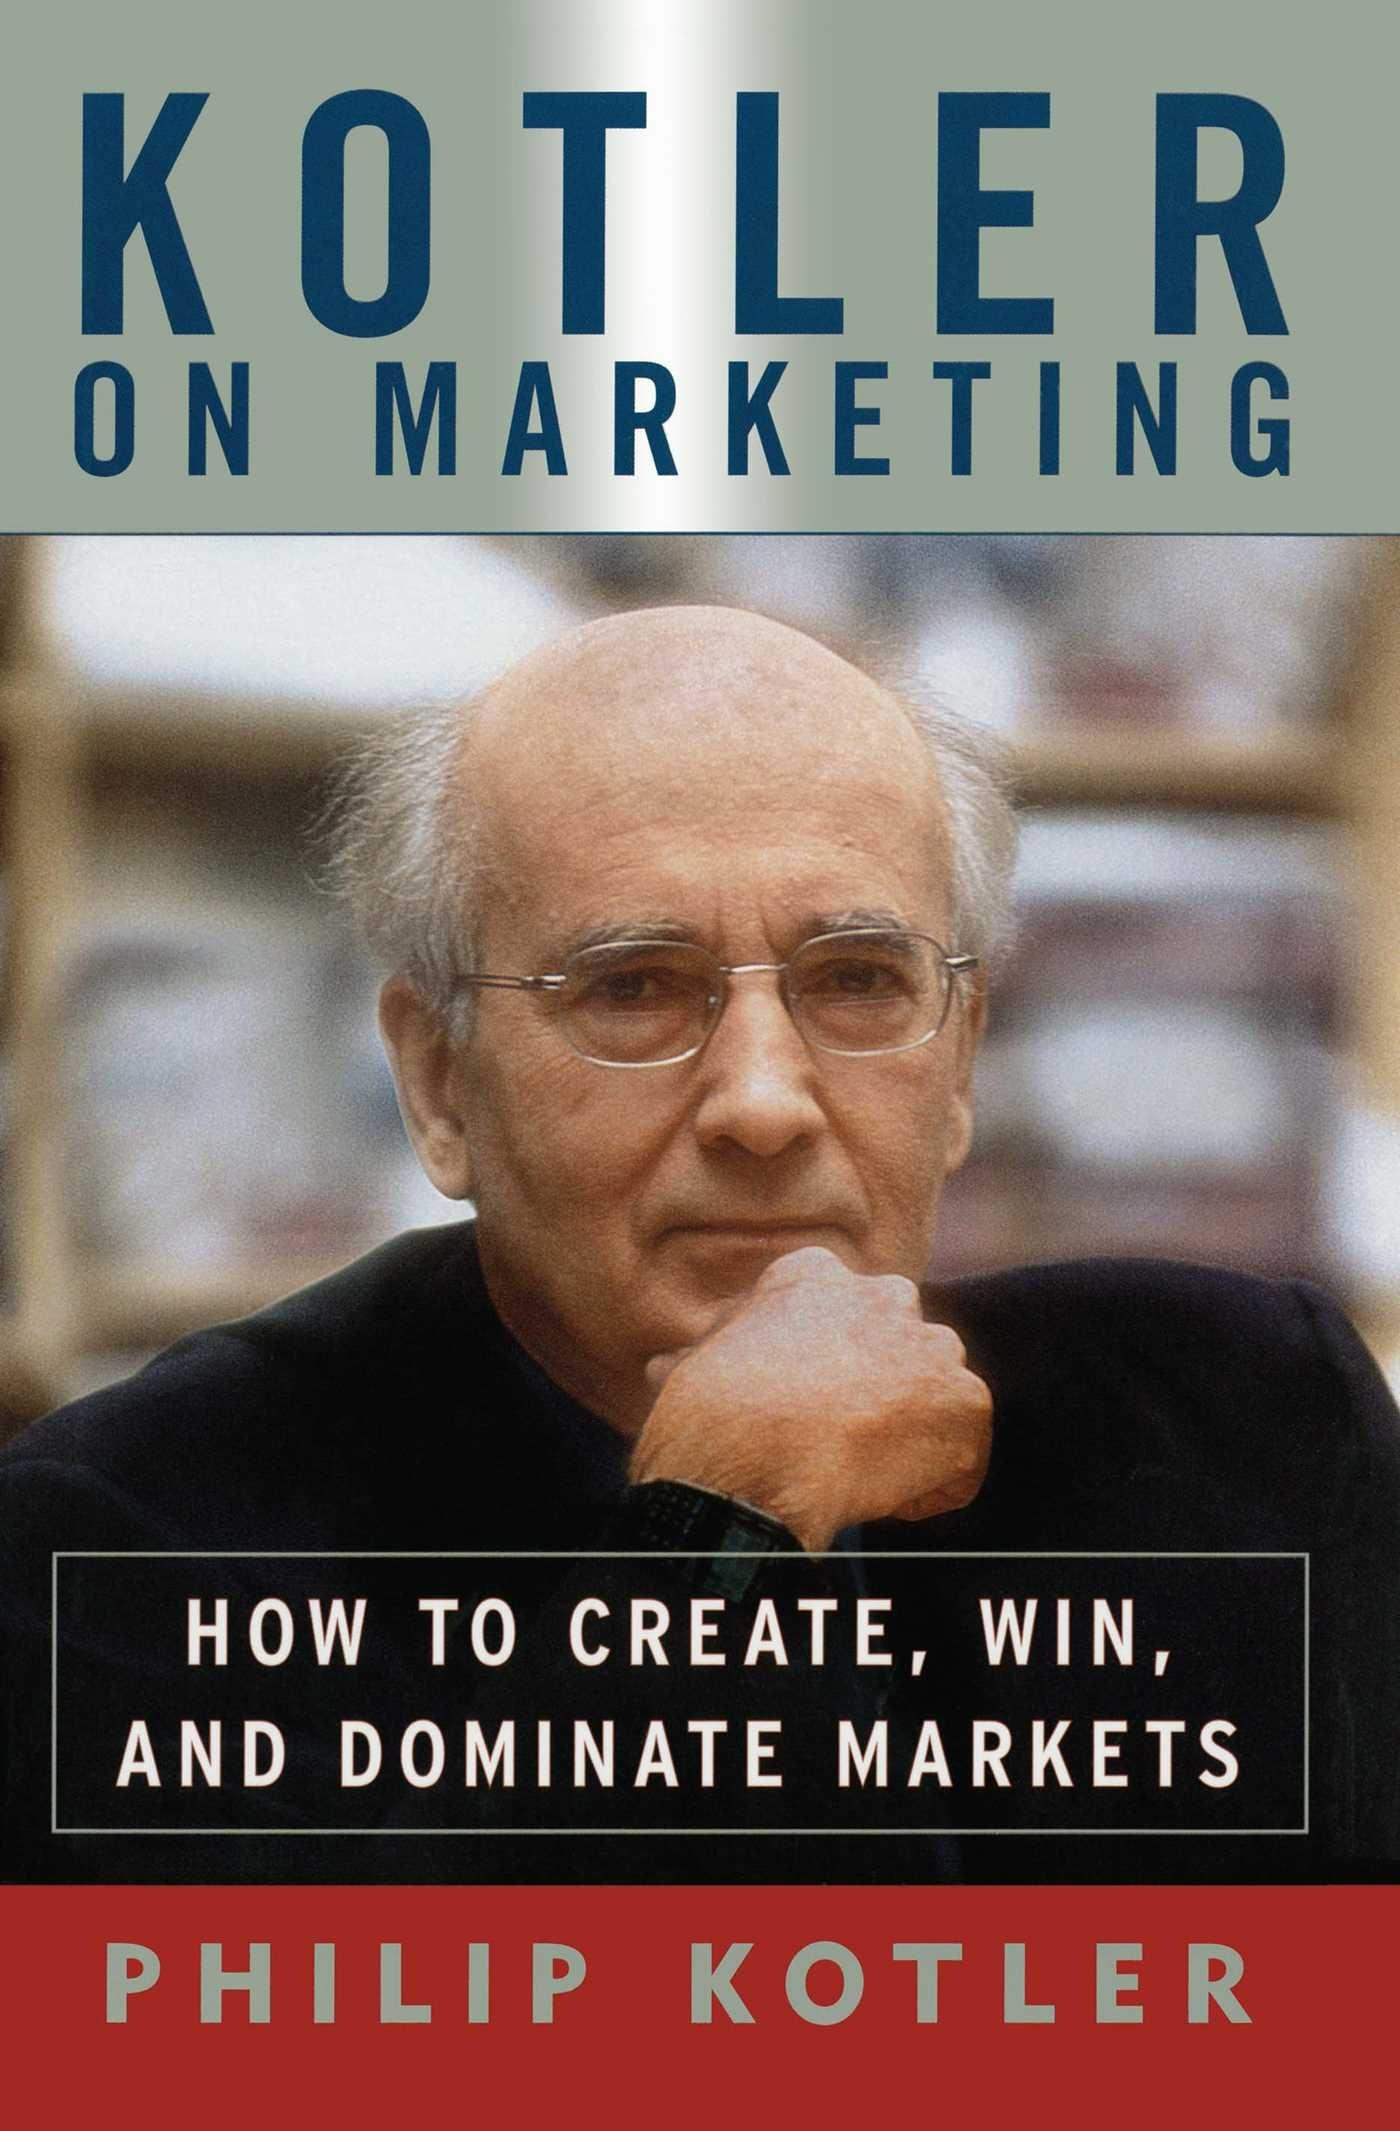 Kotler on Marketing (Source: Amazon)